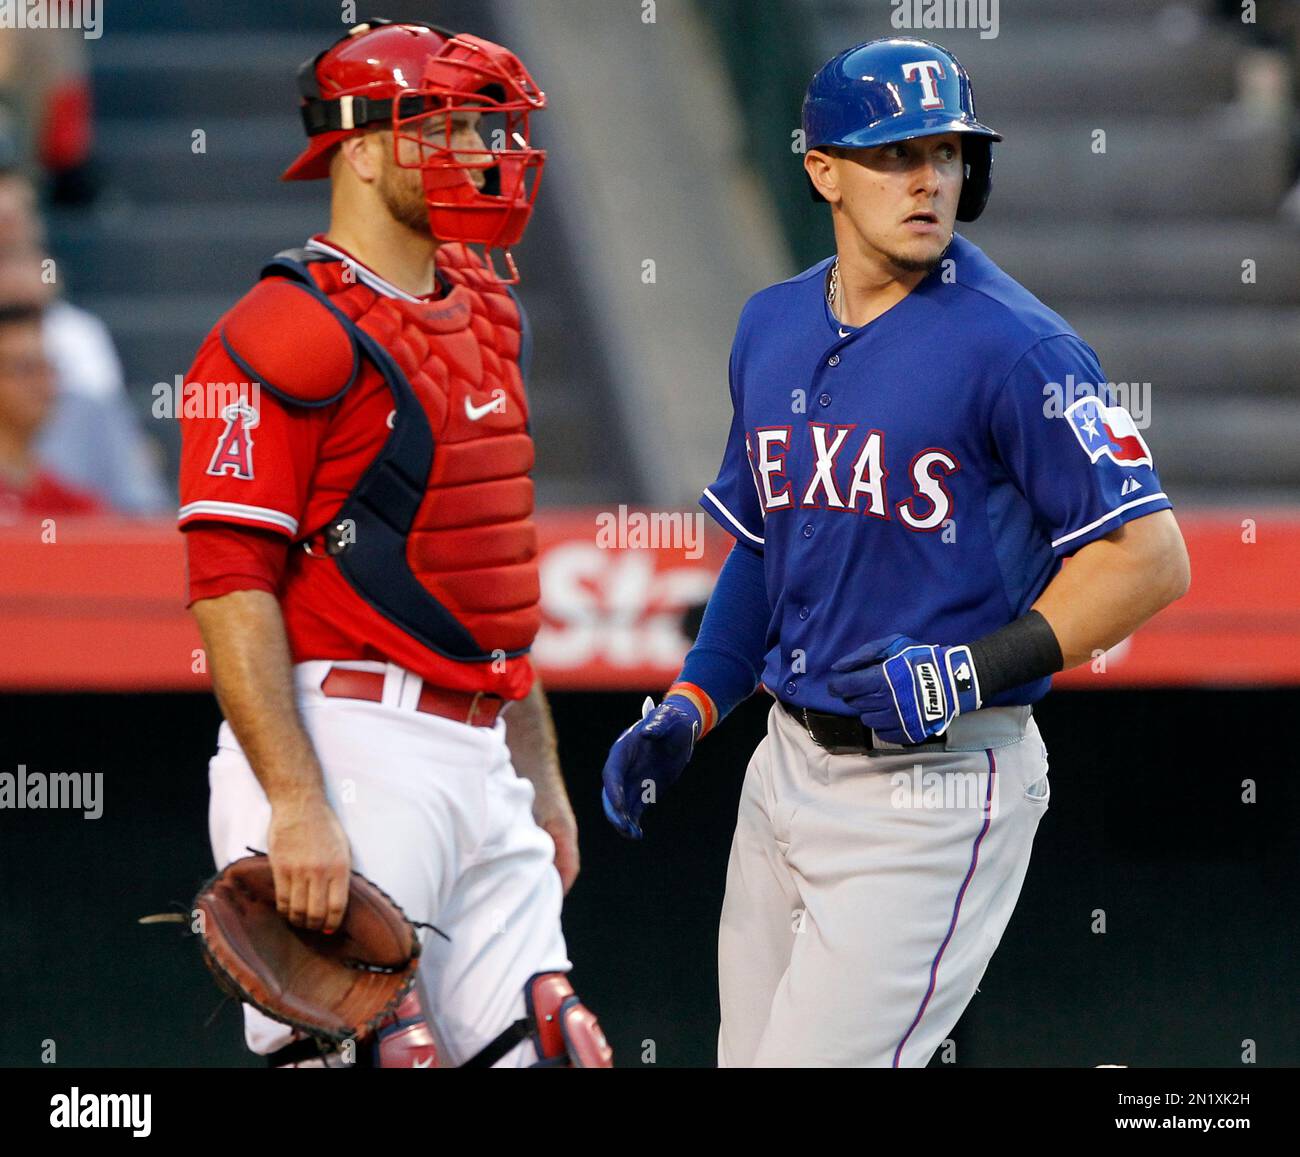 Texas Rangers - Congrats to Chris Martin & Robinson Chirinos, who